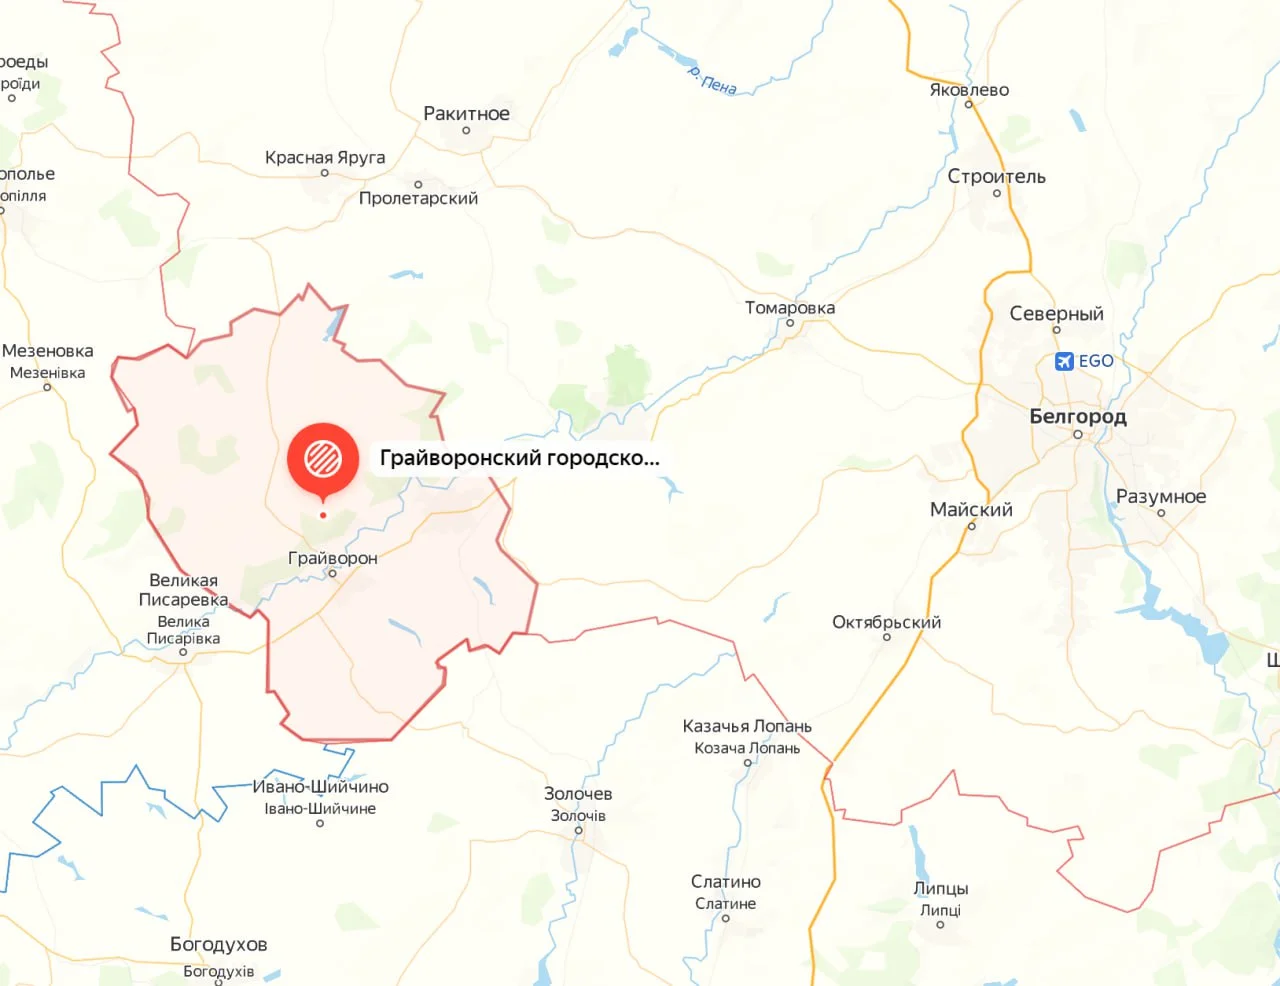 Последние новости Белгорода: ВСУ пытаются прорваться через нашу границу